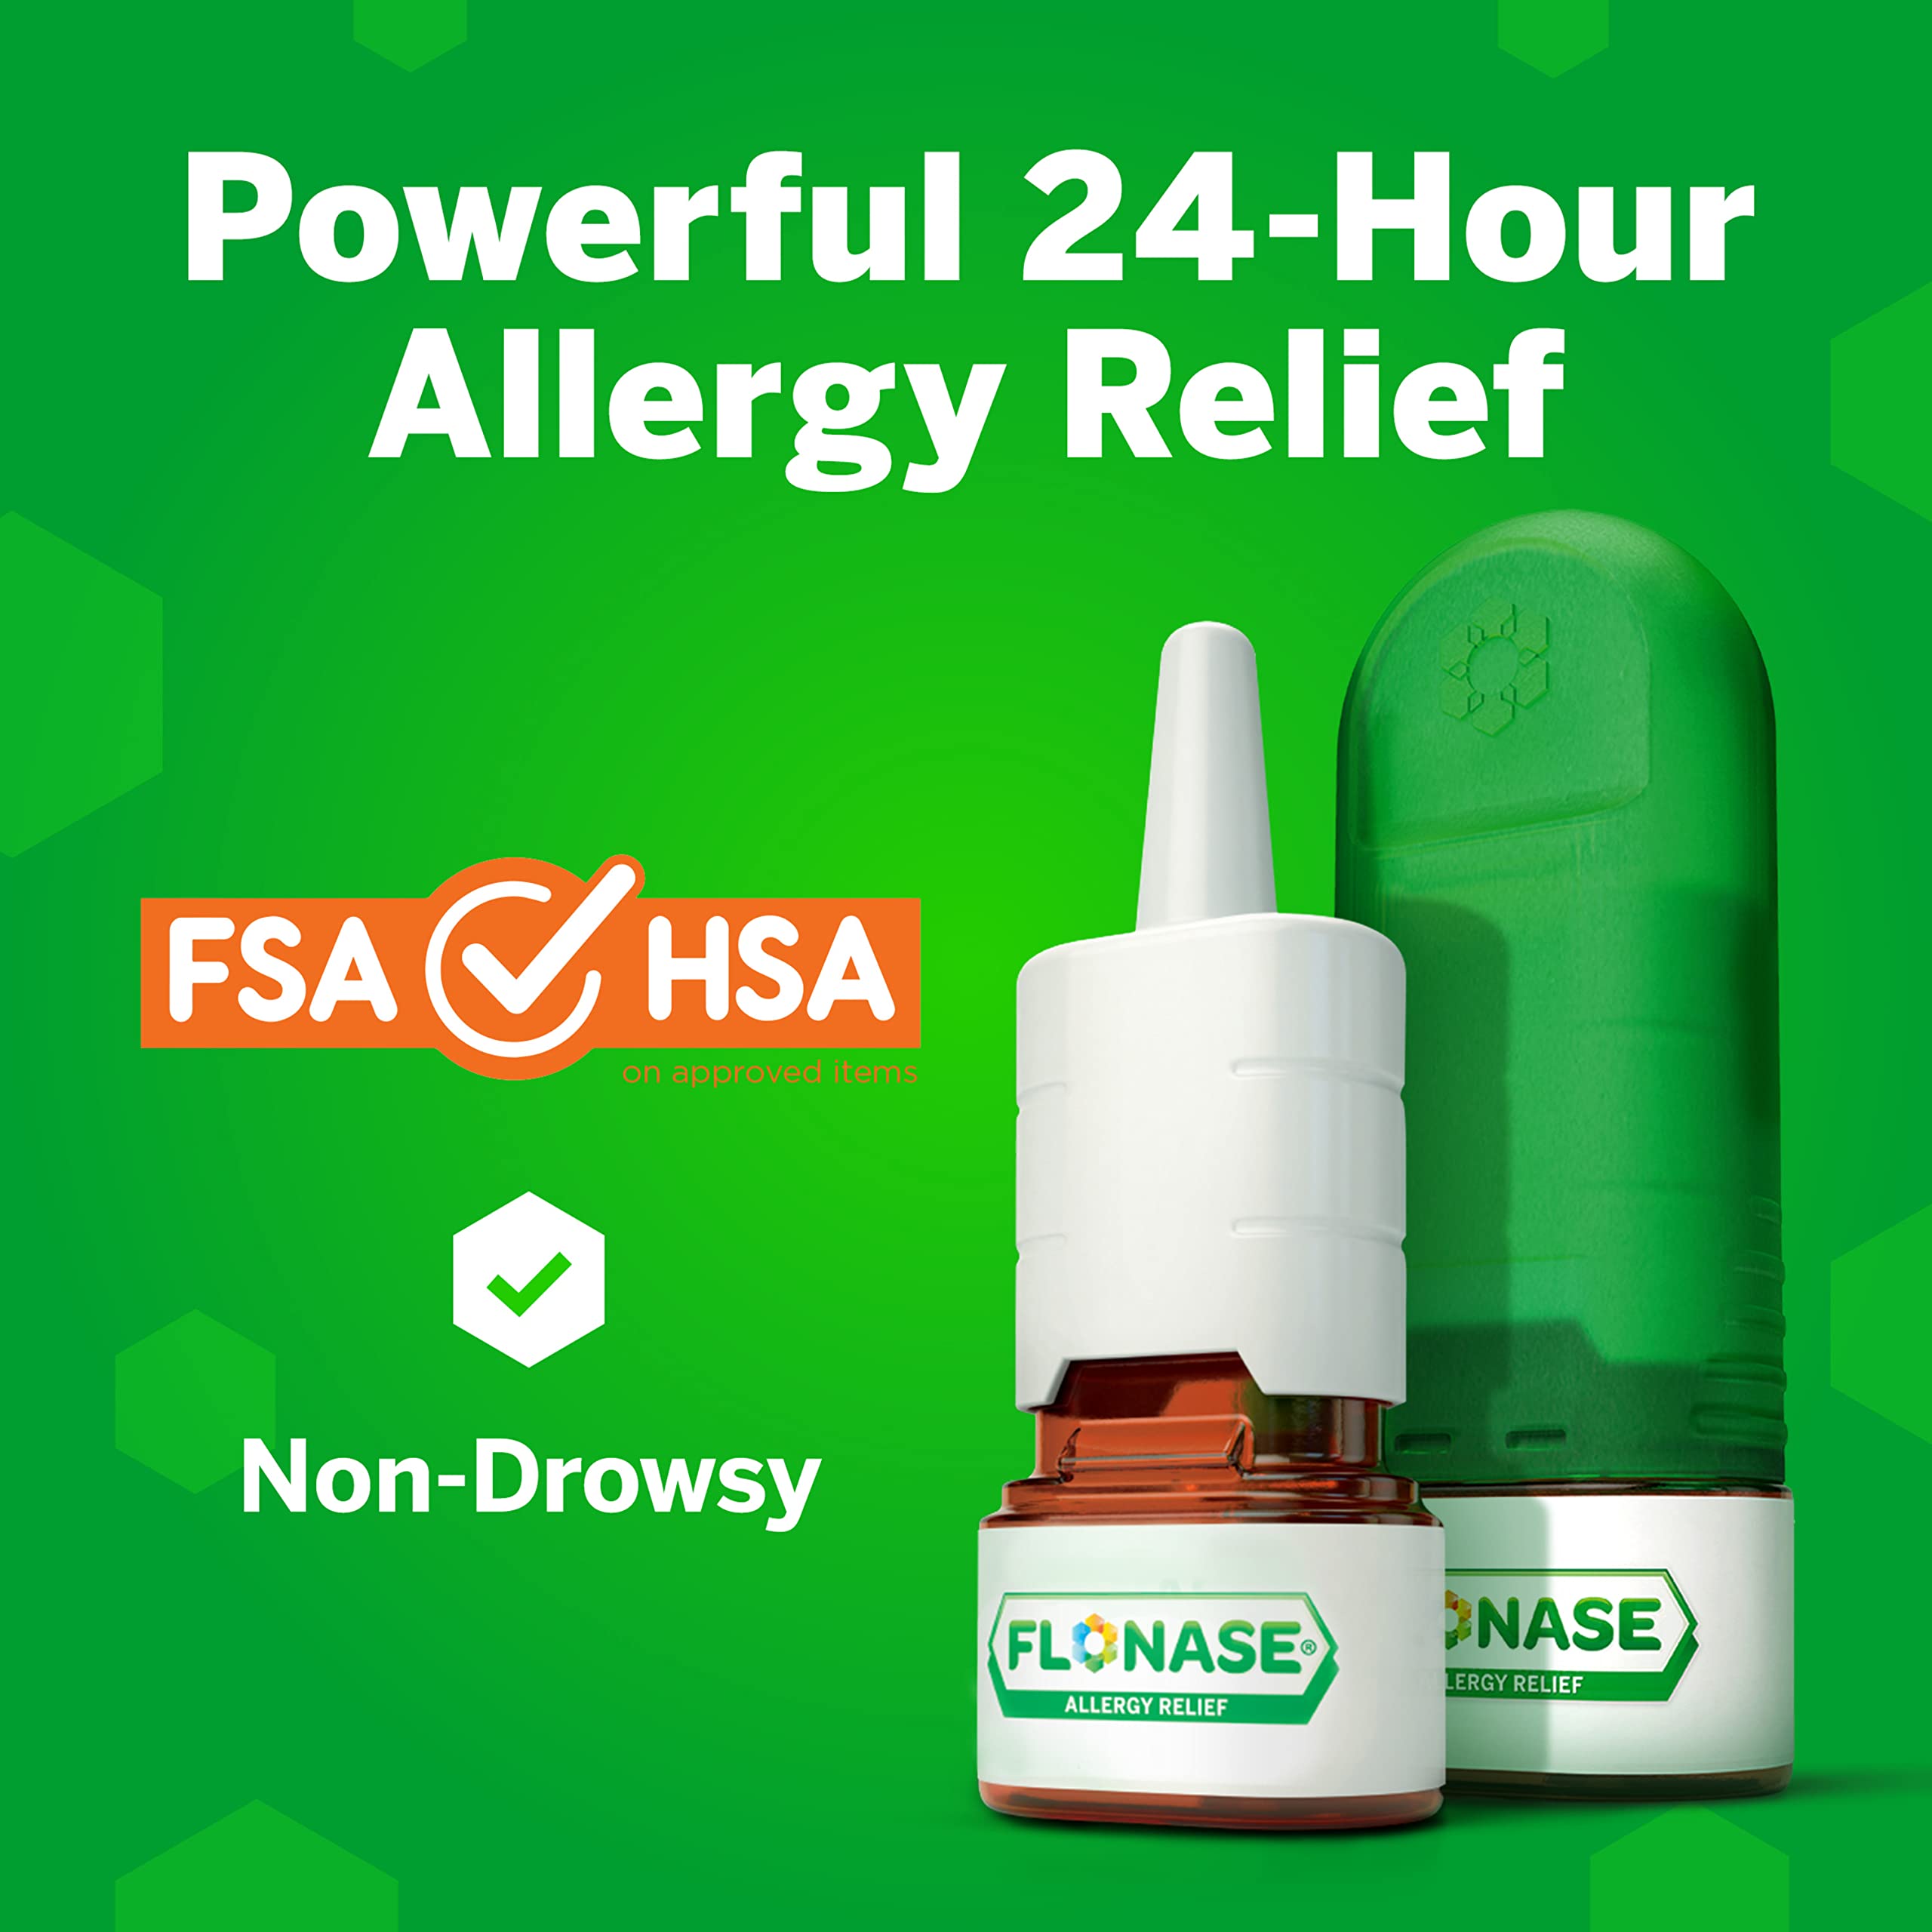 Flonase Allergy Relief Nasal Spray, 24 Hour Non Drowsy Allergy Medicine, Metered Nasal Spray - 72 Sprays